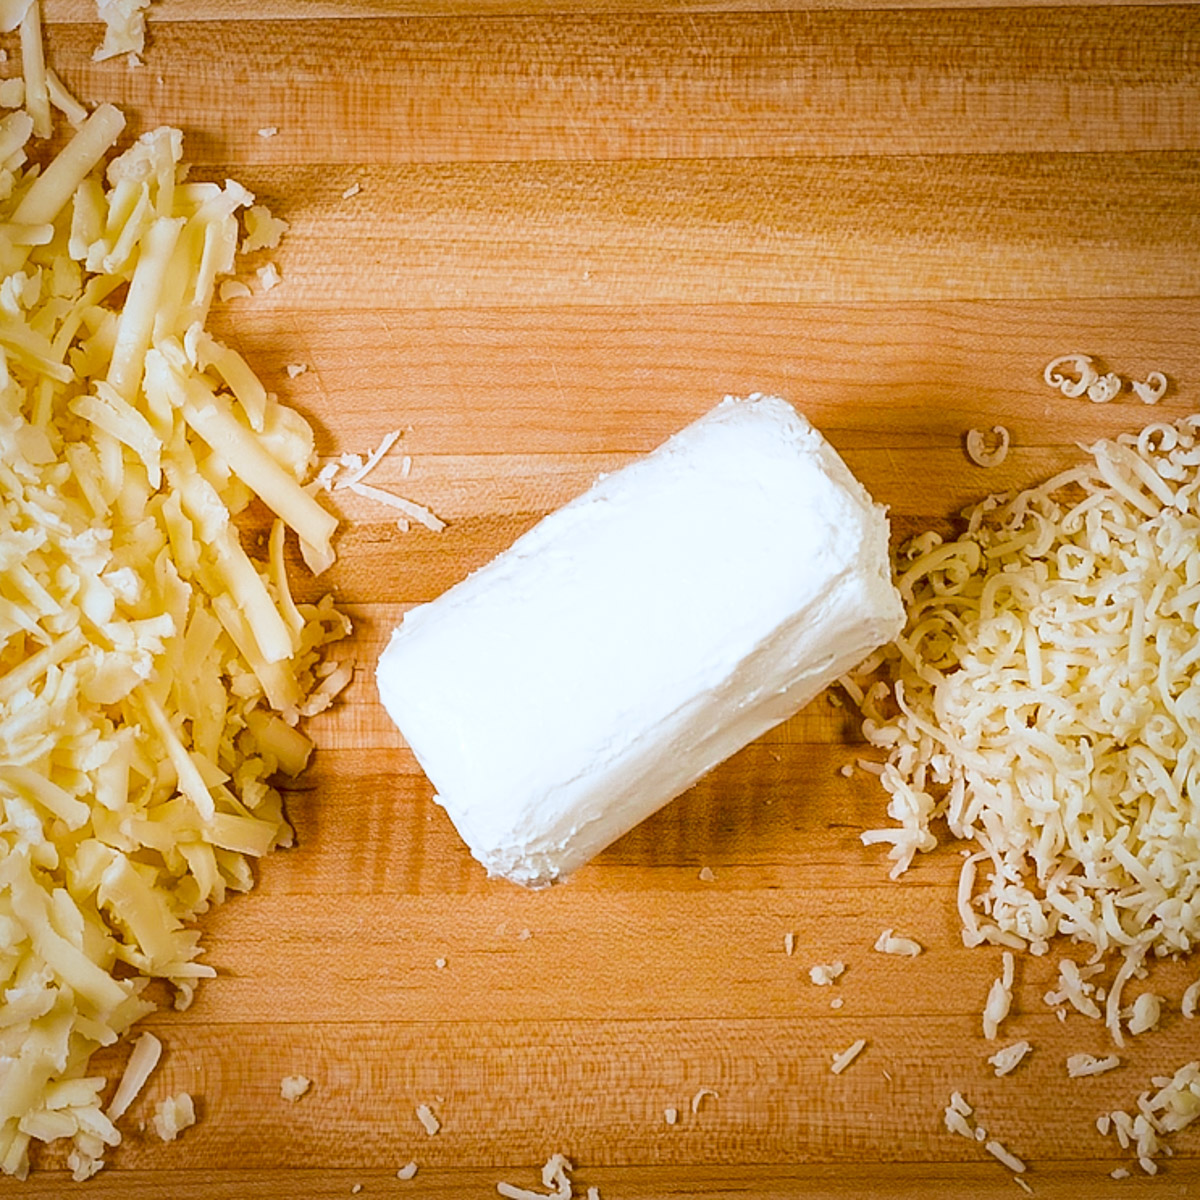 Prepare the cheese.